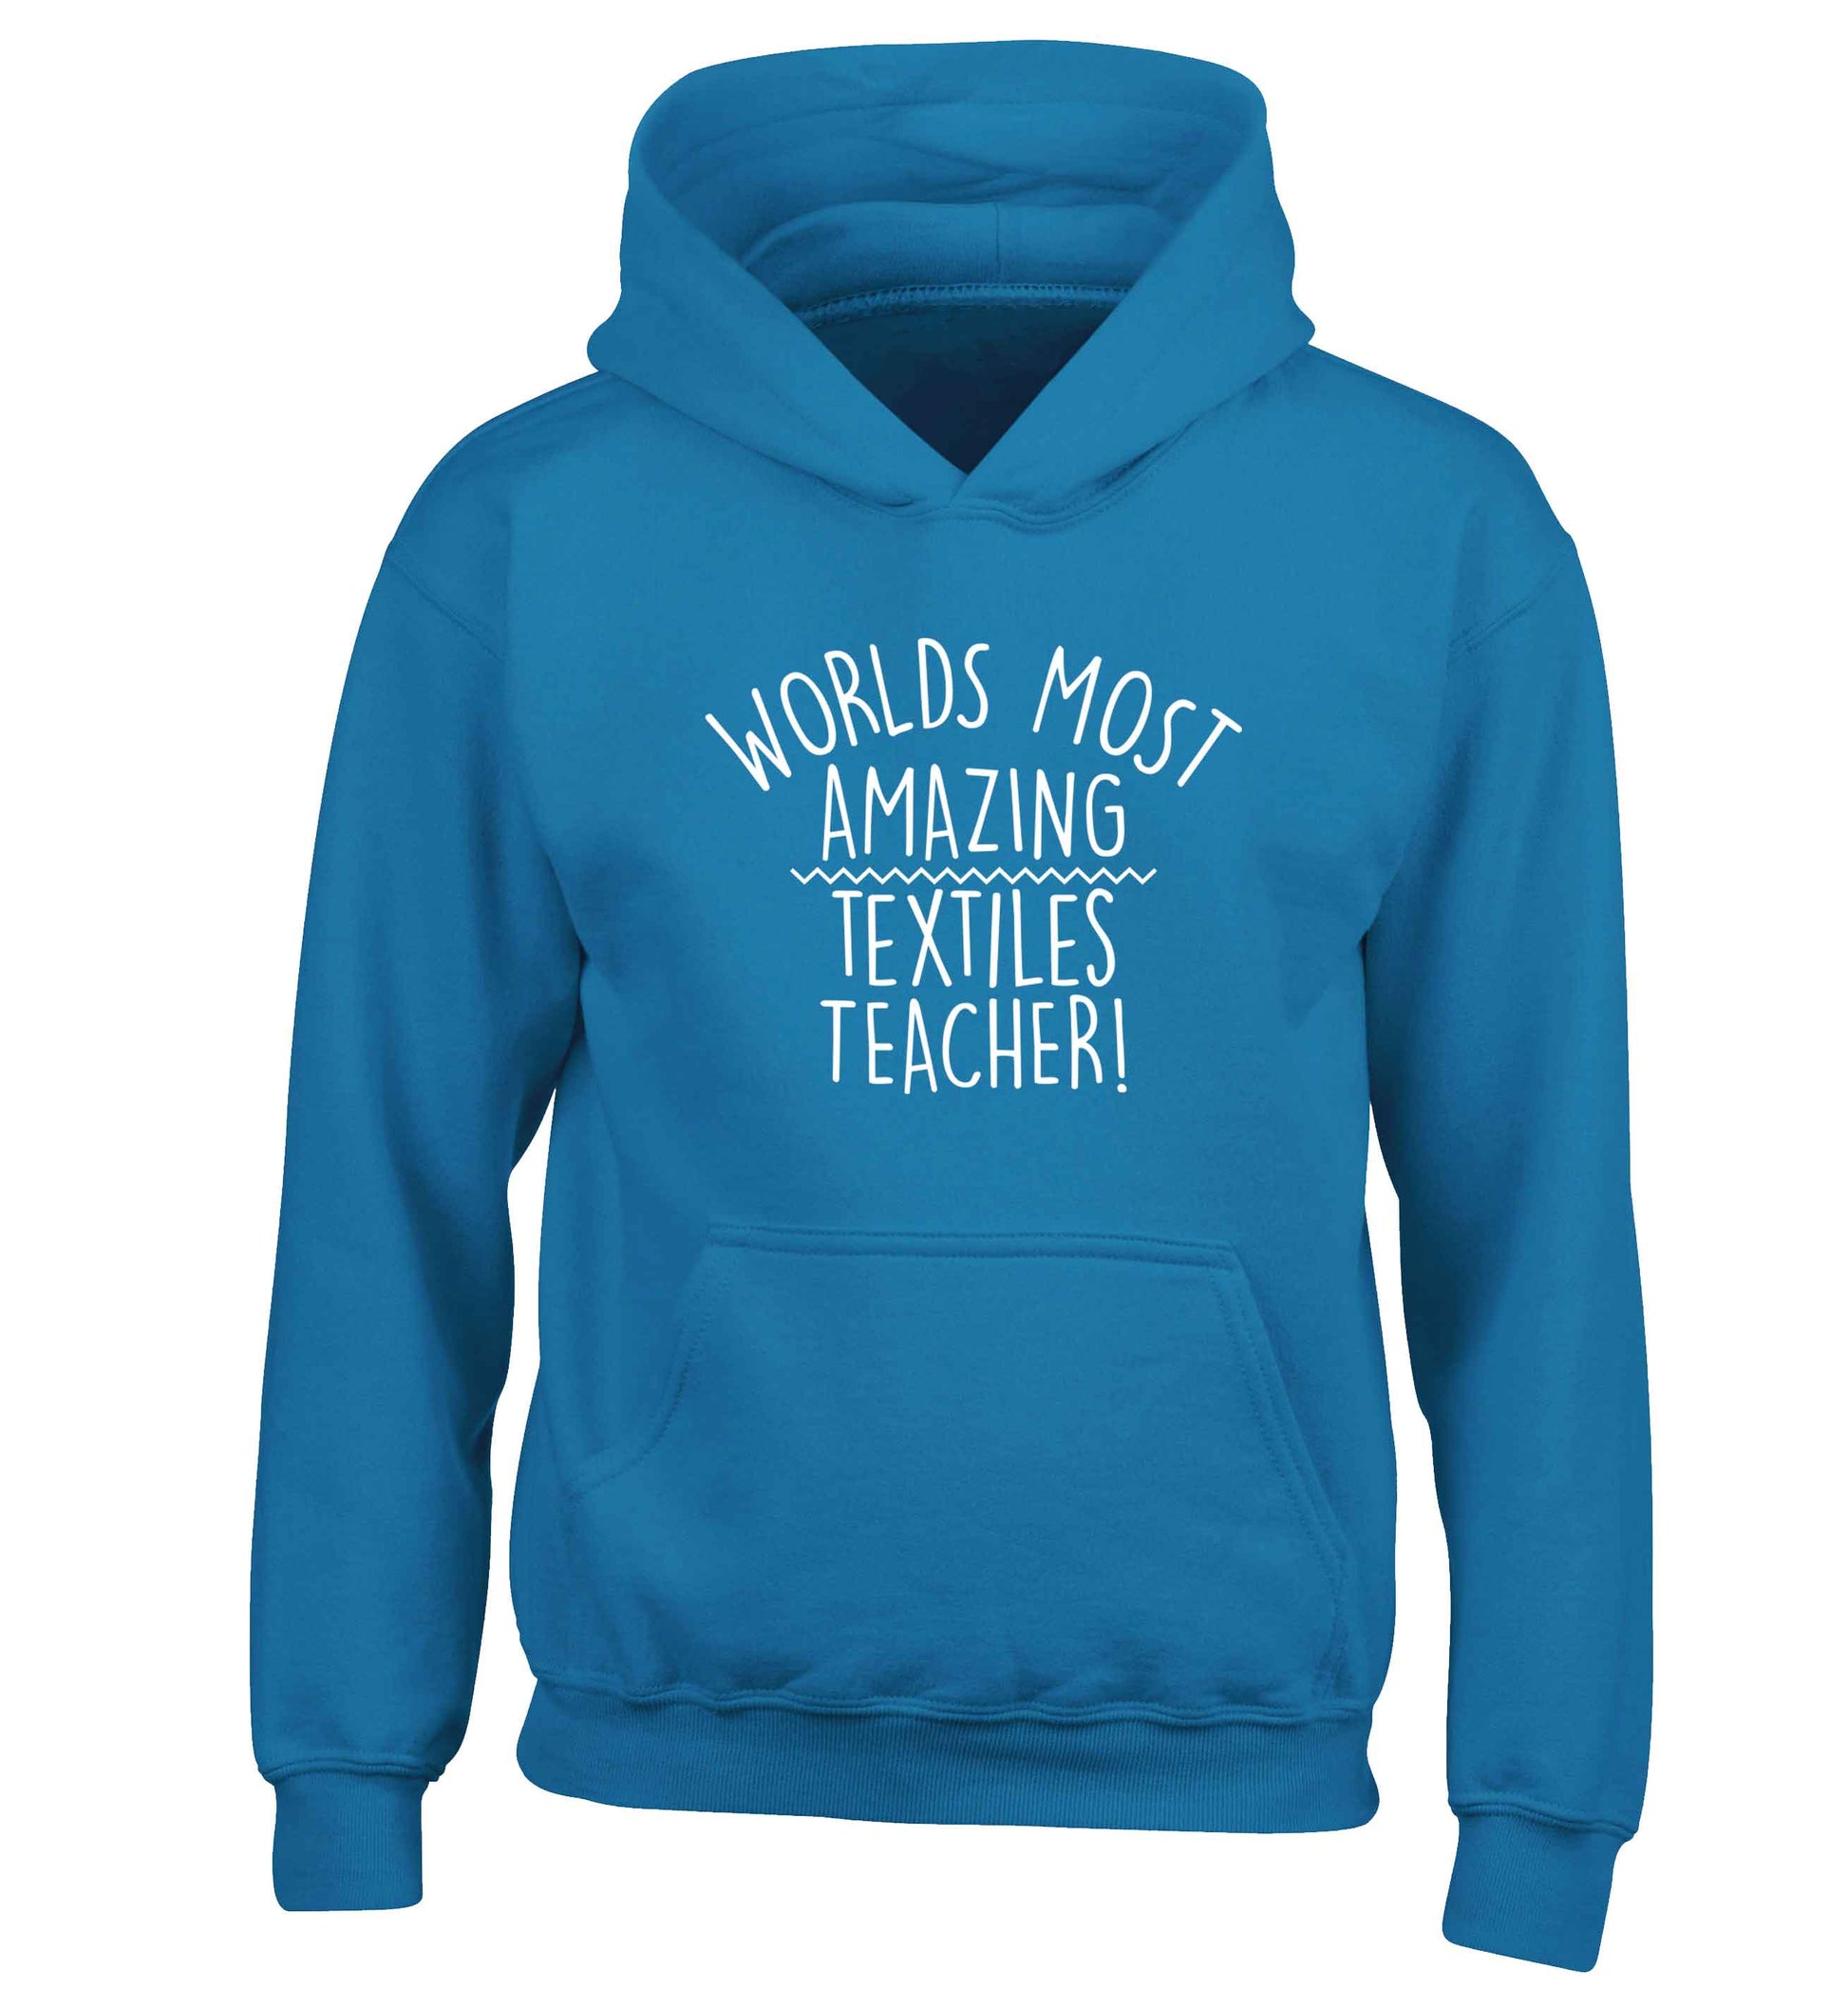 Worlds most amazing textiles teacher children's blue hoodie 12-13 Years